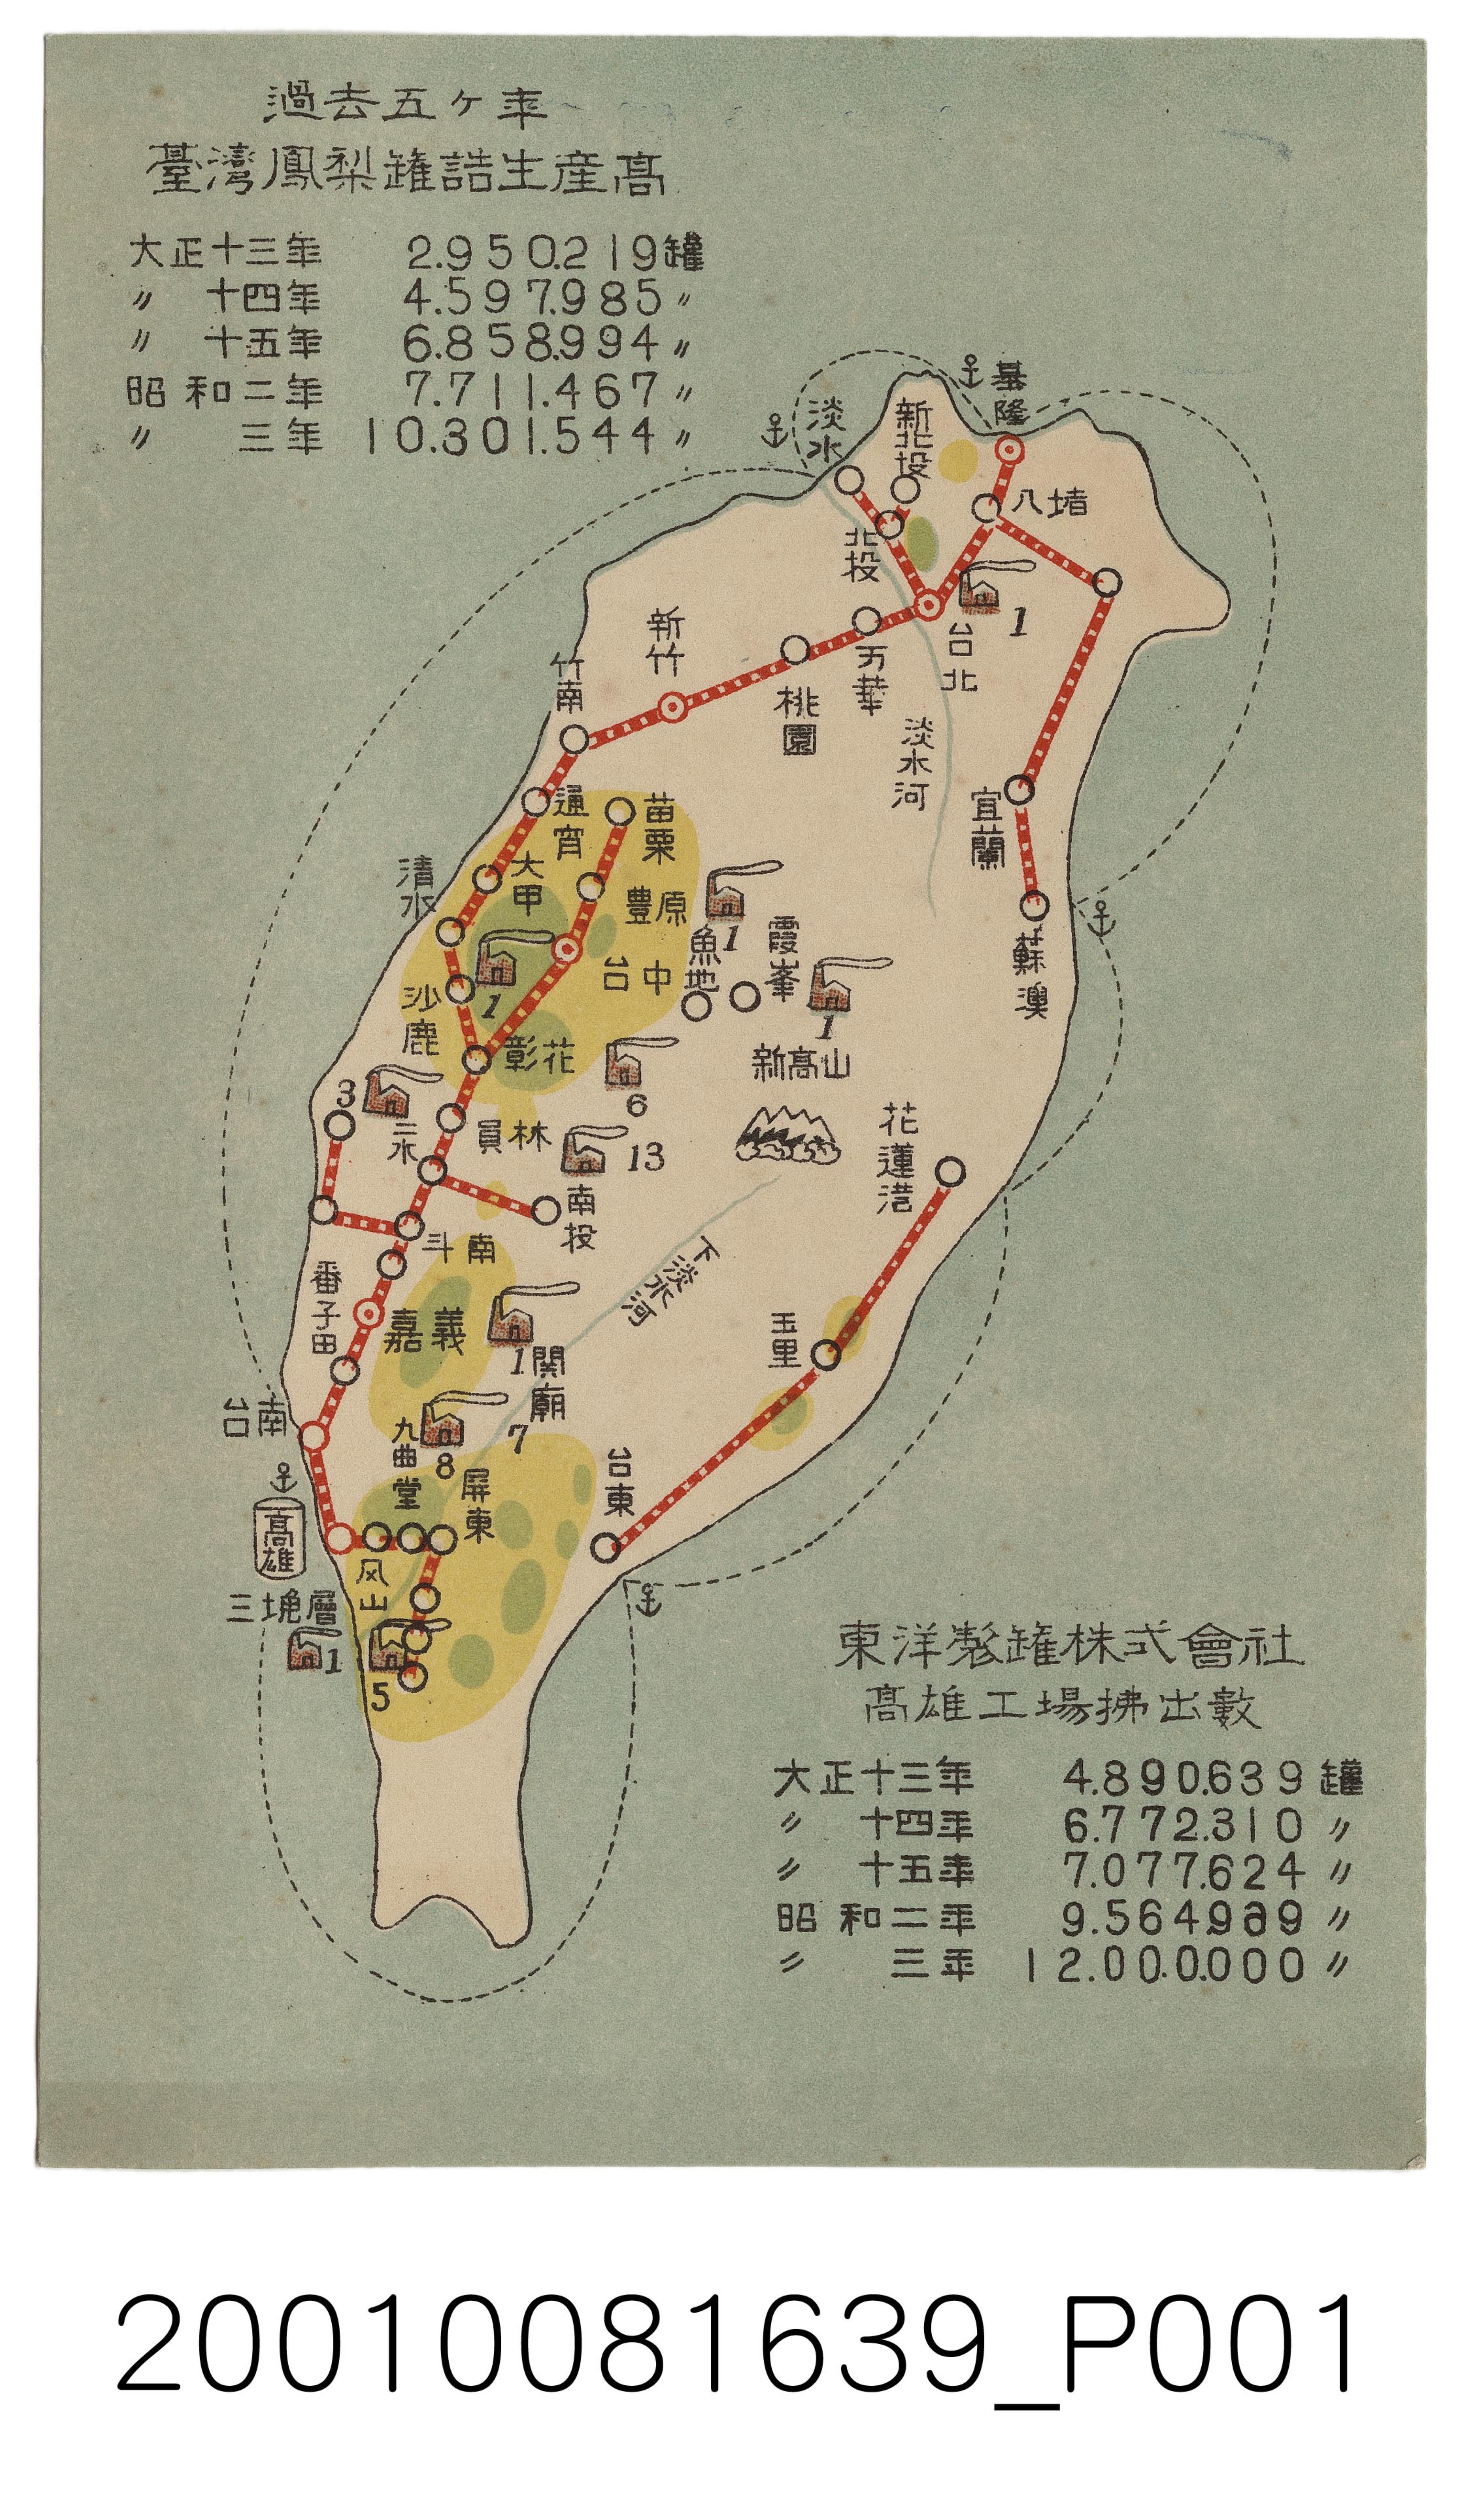 臺灣鳳梨罐頭生產統計 (共2張)